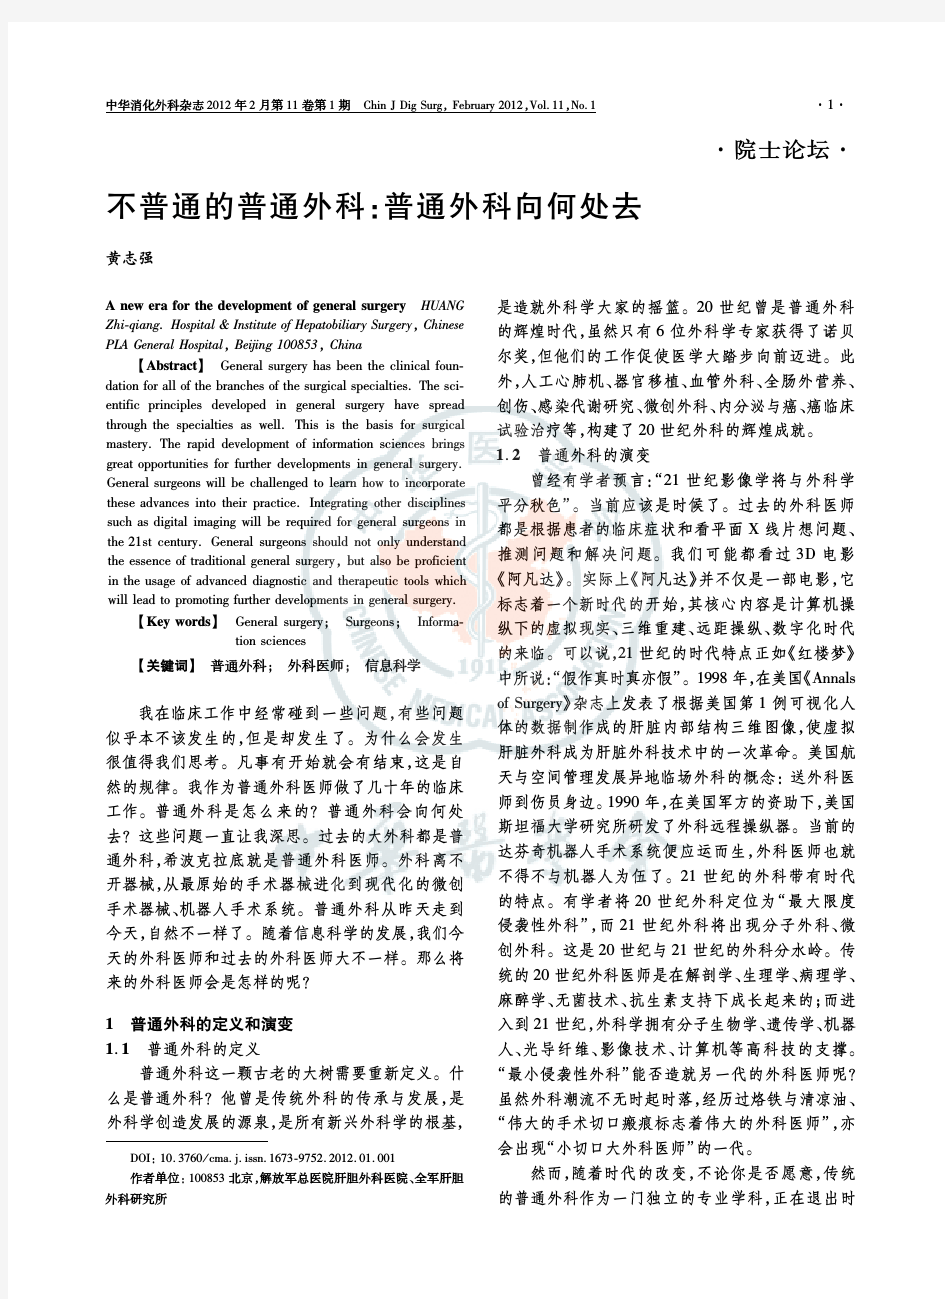 不普通的普通外科：普通外科向何处去 - 中华医学会杂志社